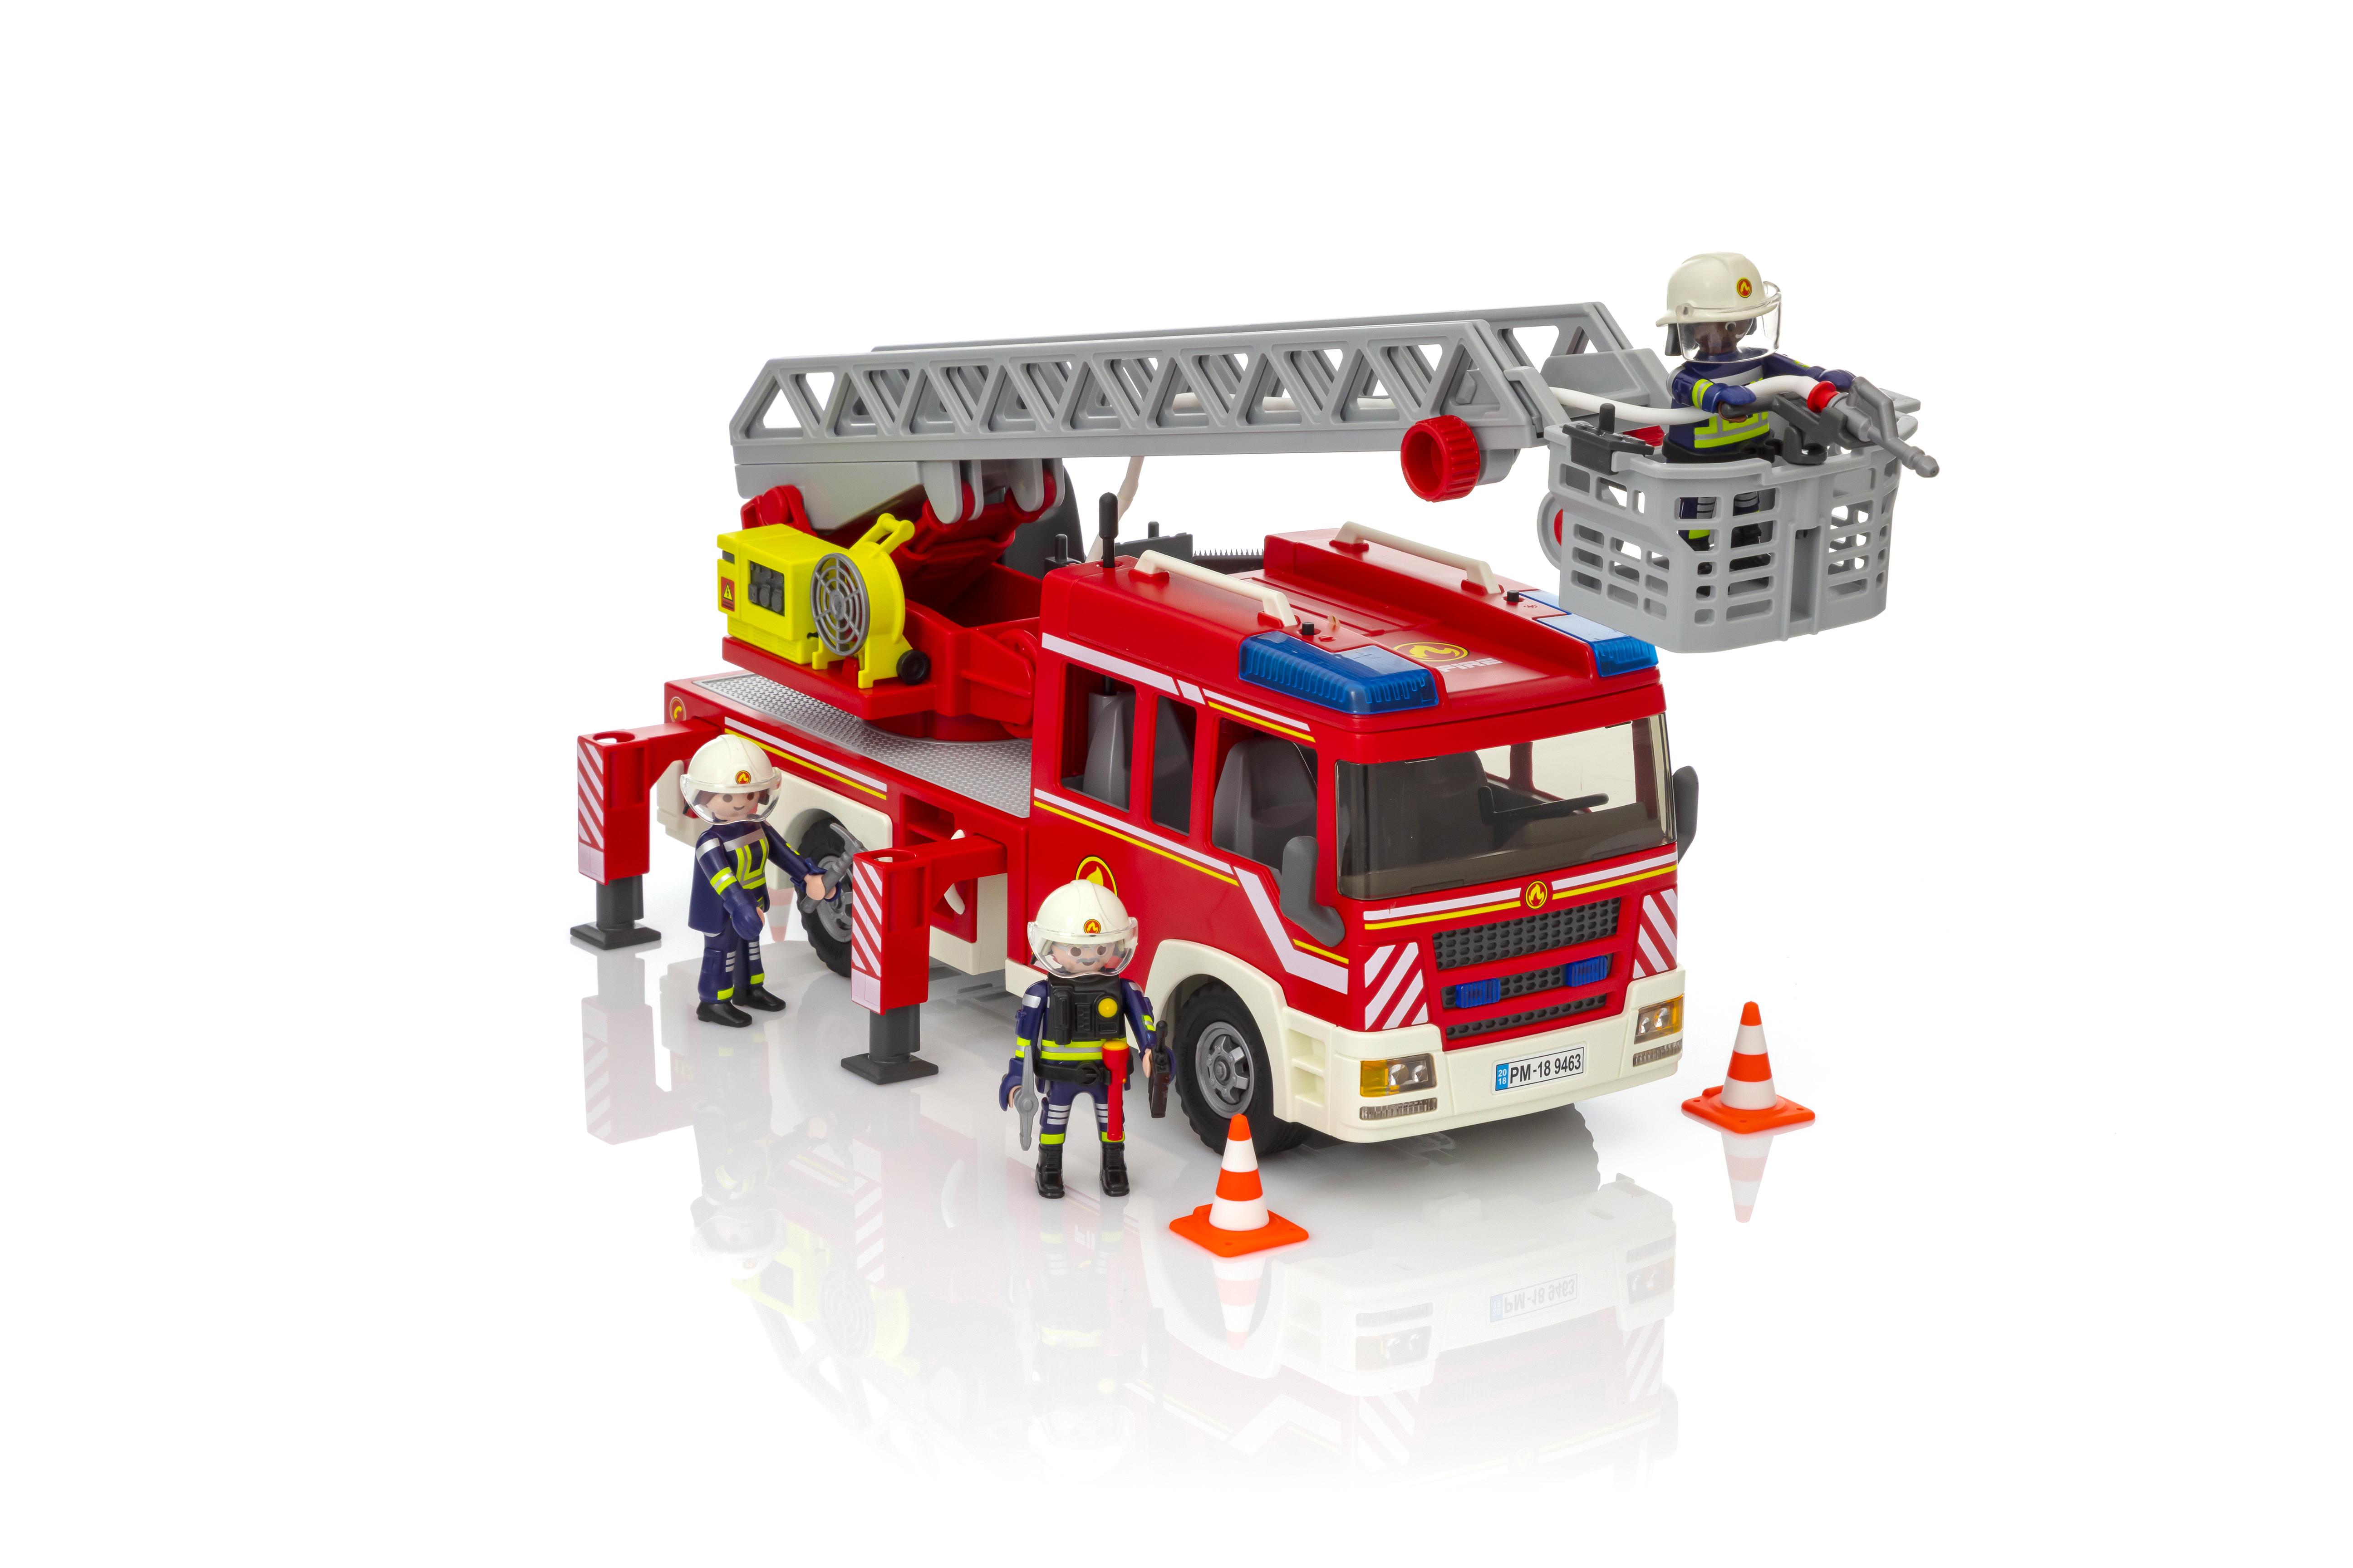 vidéos de playmobil pompier